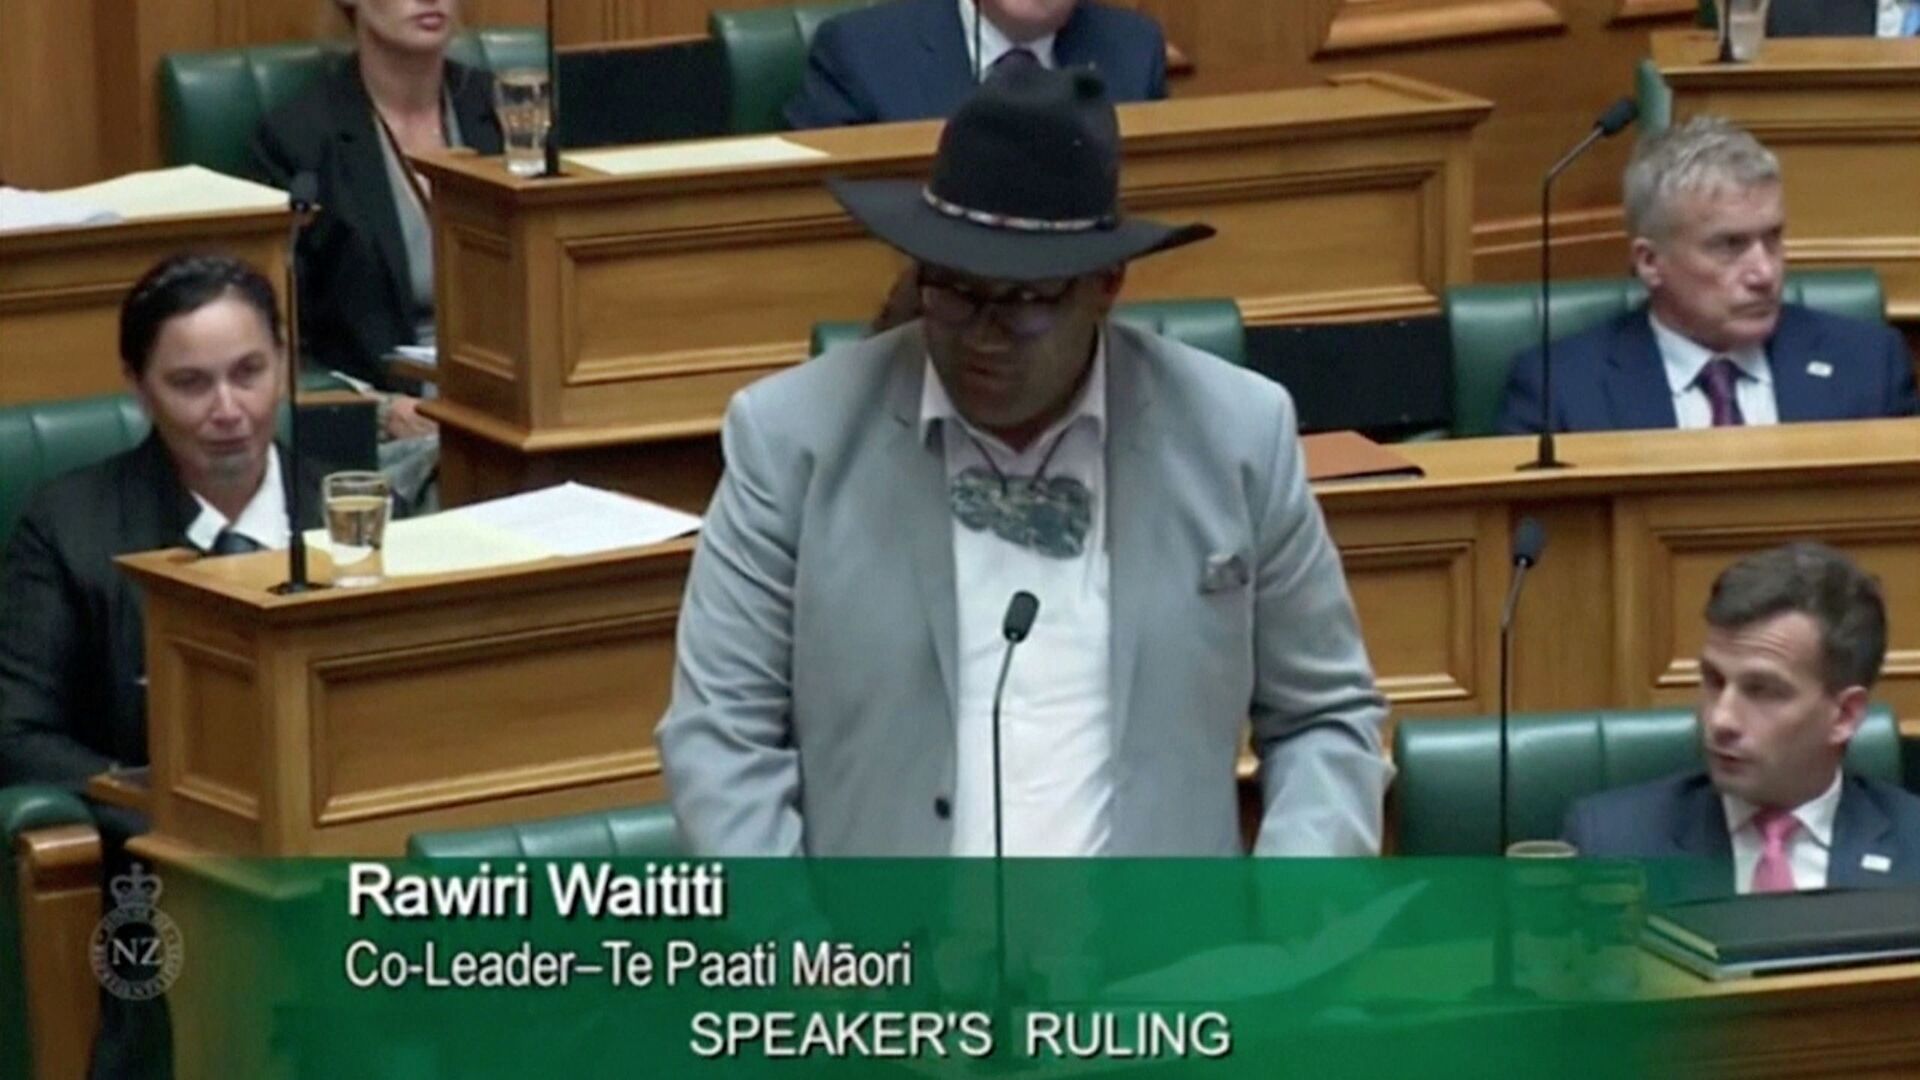 Político Maori da Nova Zelândia convence Parlamento a retirar obrigatoriedade das gravatas - Sputnik Brasil, 1920, 10.02.2021